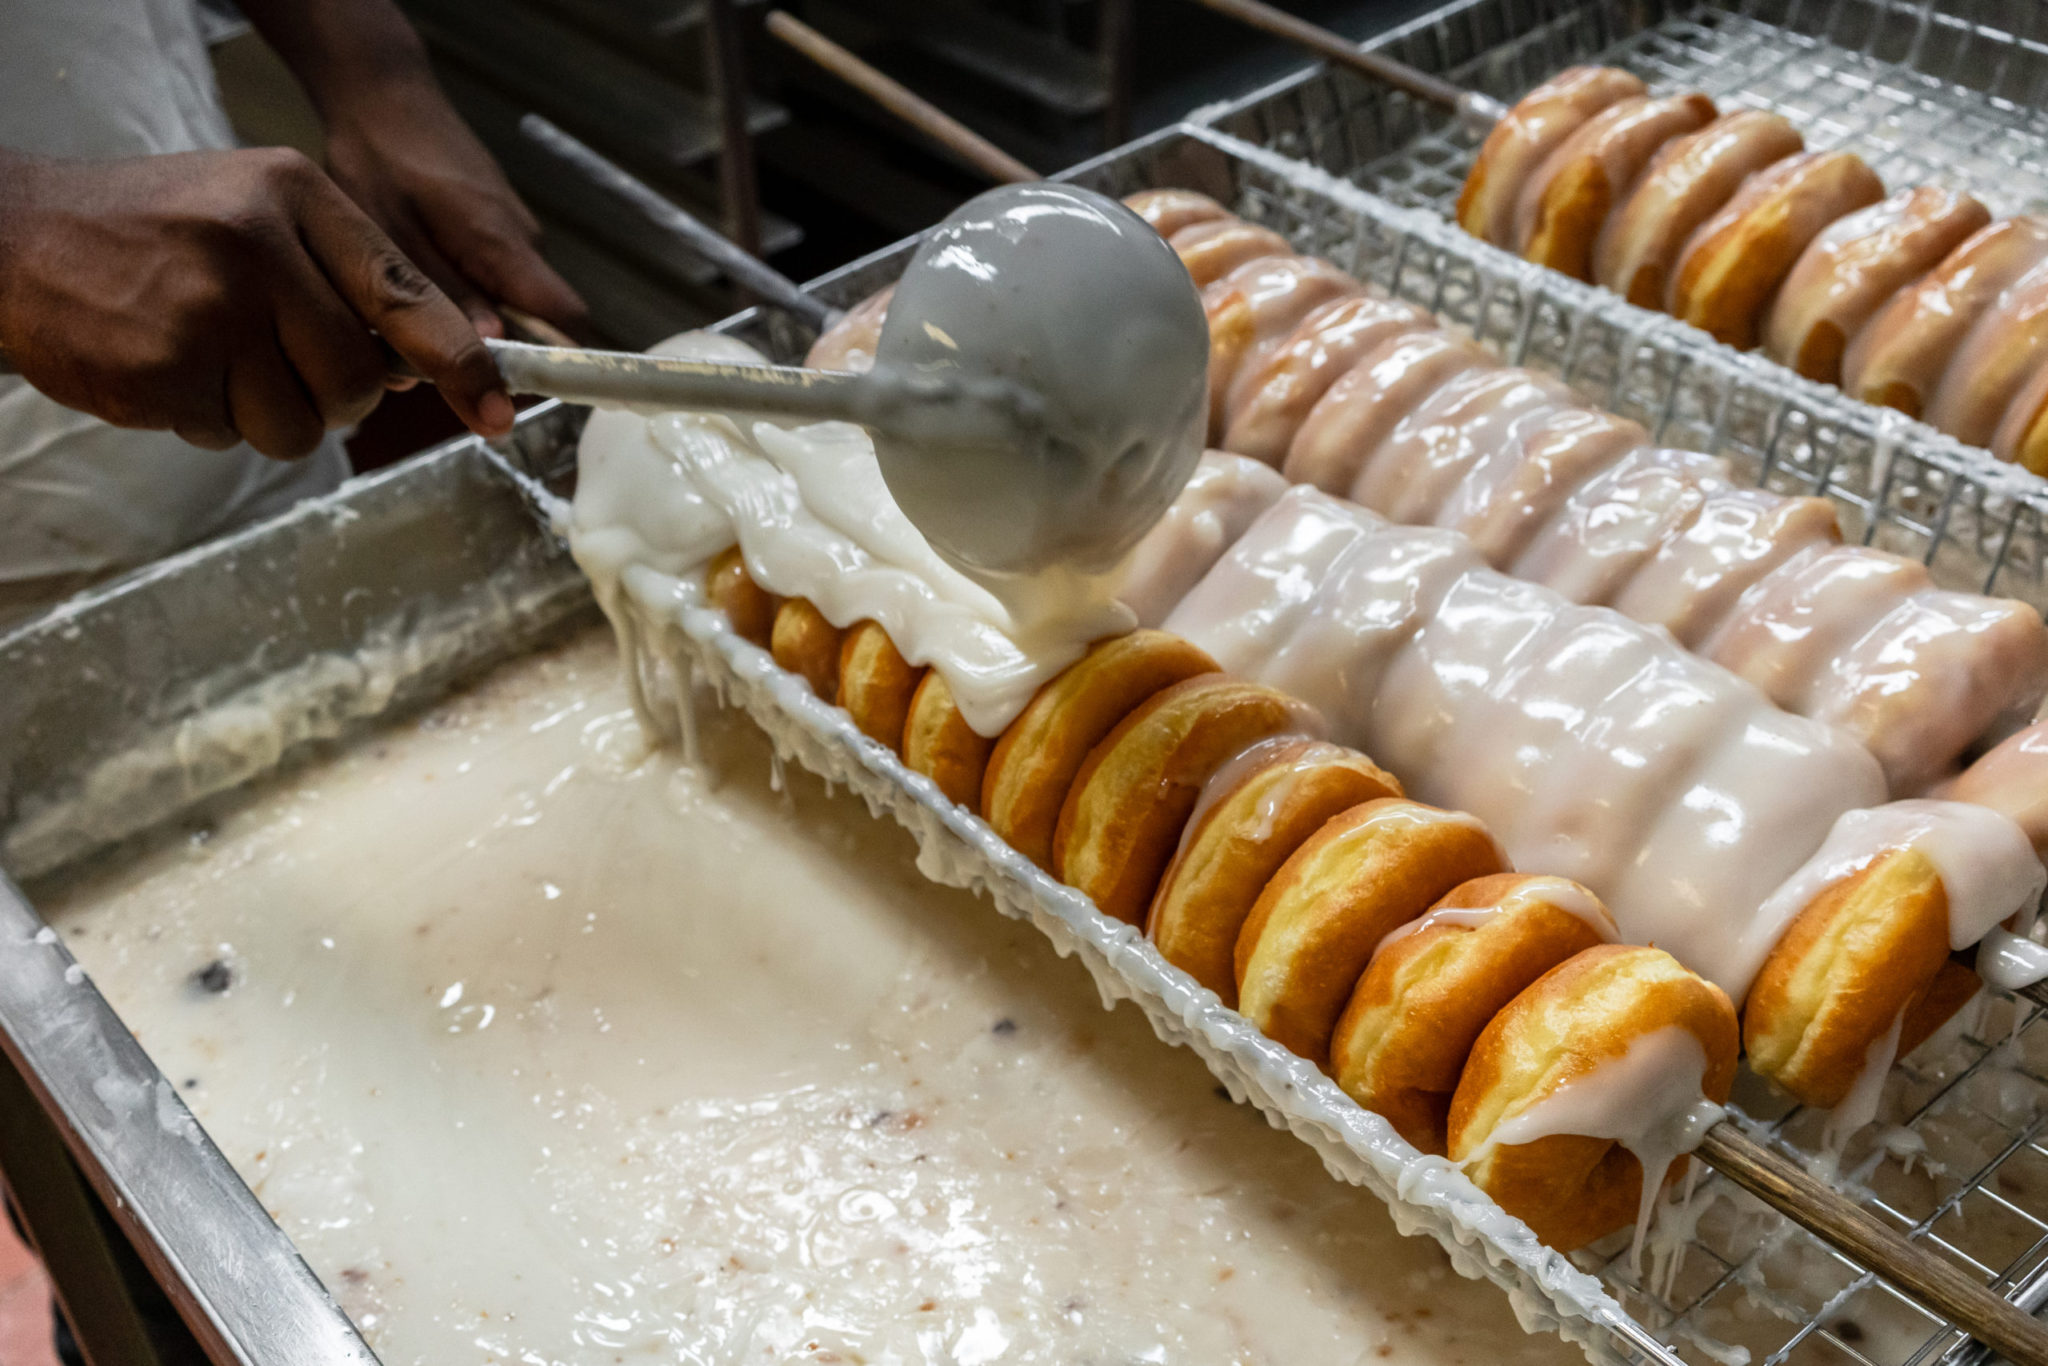 Donut being glazed